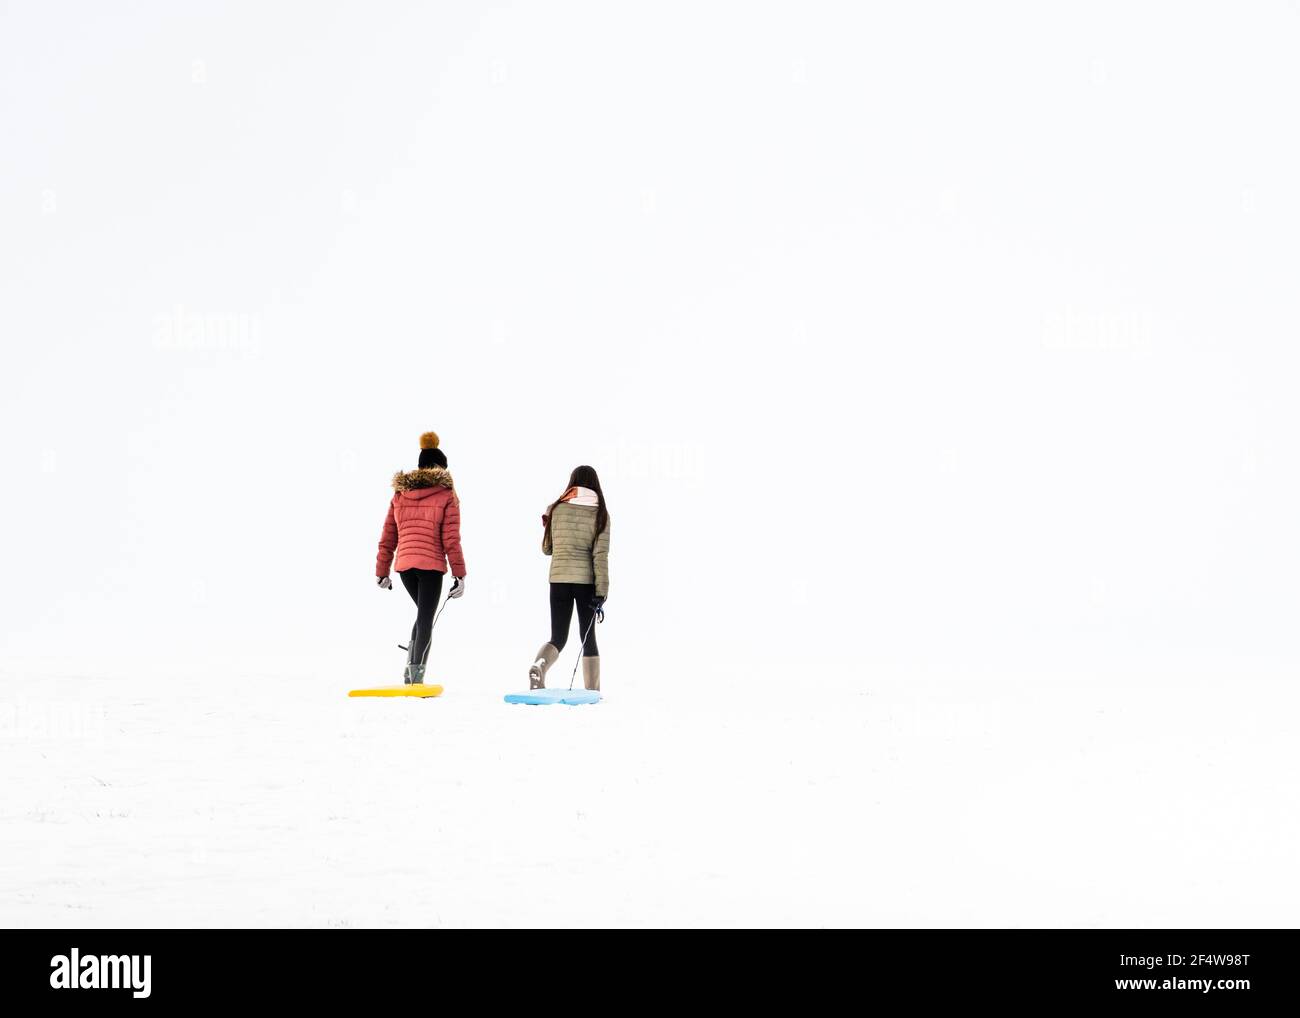 En un invierno whiteout dos niñas / mujeres jóvenes tirar trineos en la nieve Foto de stock